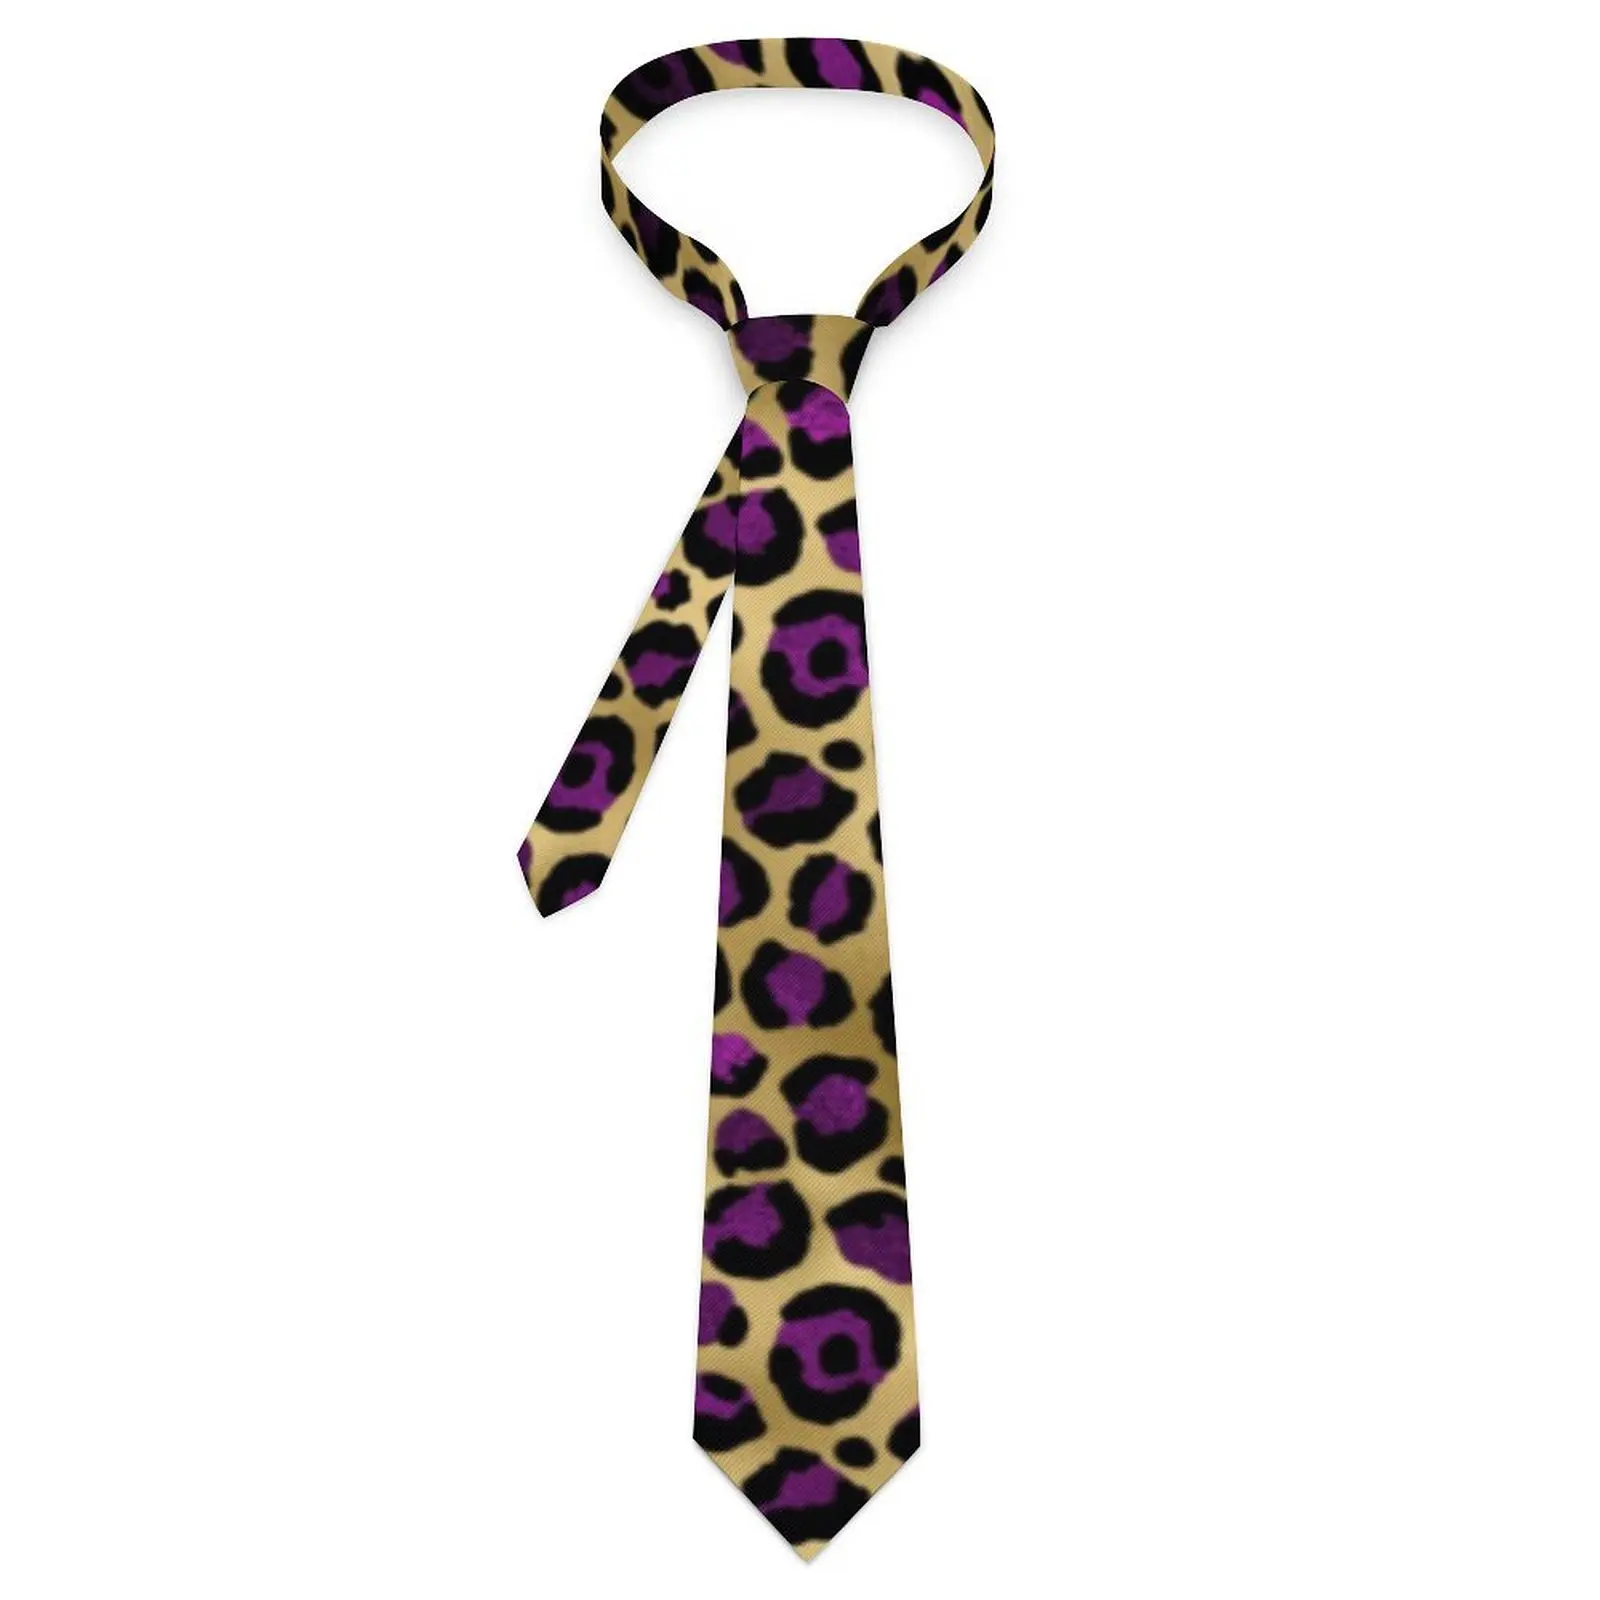 

Галстук с леопардовым принтом фиолетовый и золотой галстук для отдыха ретро повседневный галстук для галстука унисекс дизайнерский галстук для воротника галстук подарок на день рождения